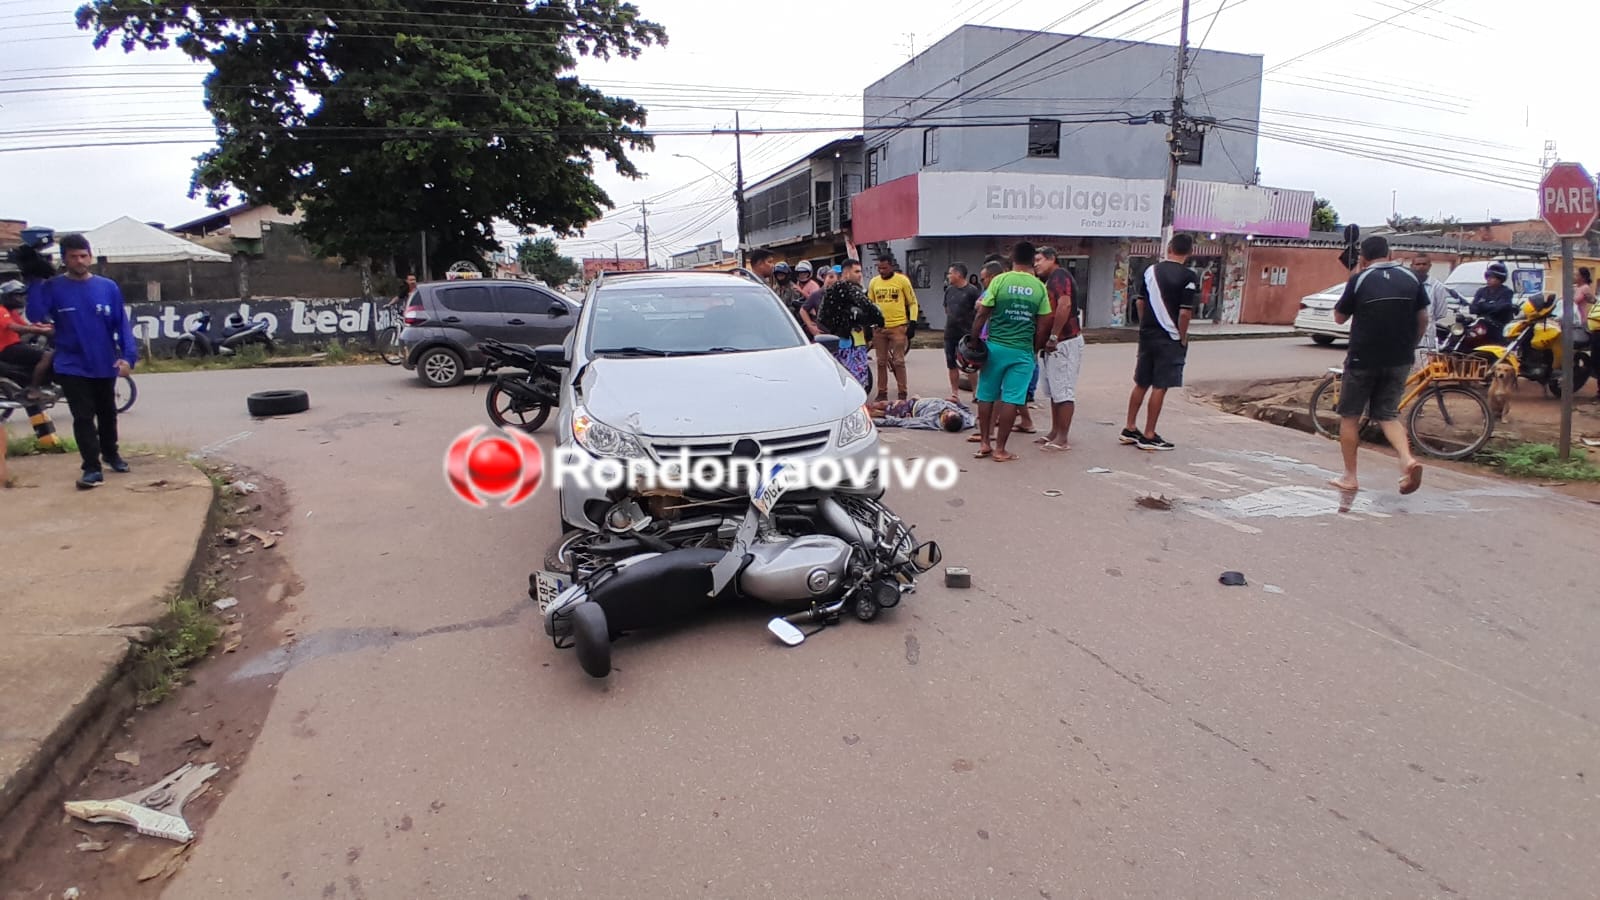 URGENTE: Criança e motociclista são arrastados por carro na zona Sul